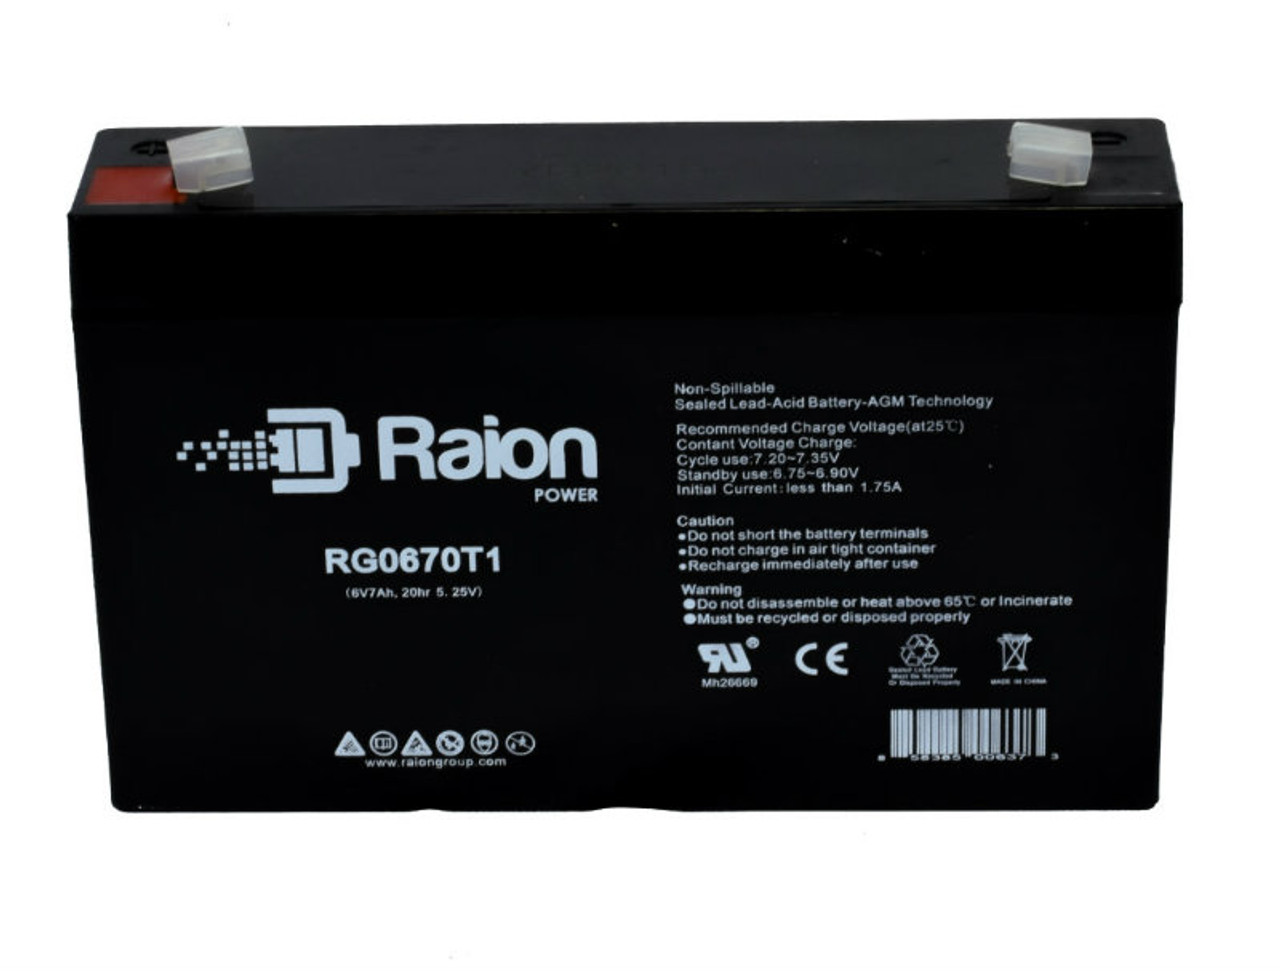 Raion Power RG0670T1 SLA Battery for Alexander GB665 OEM Battery